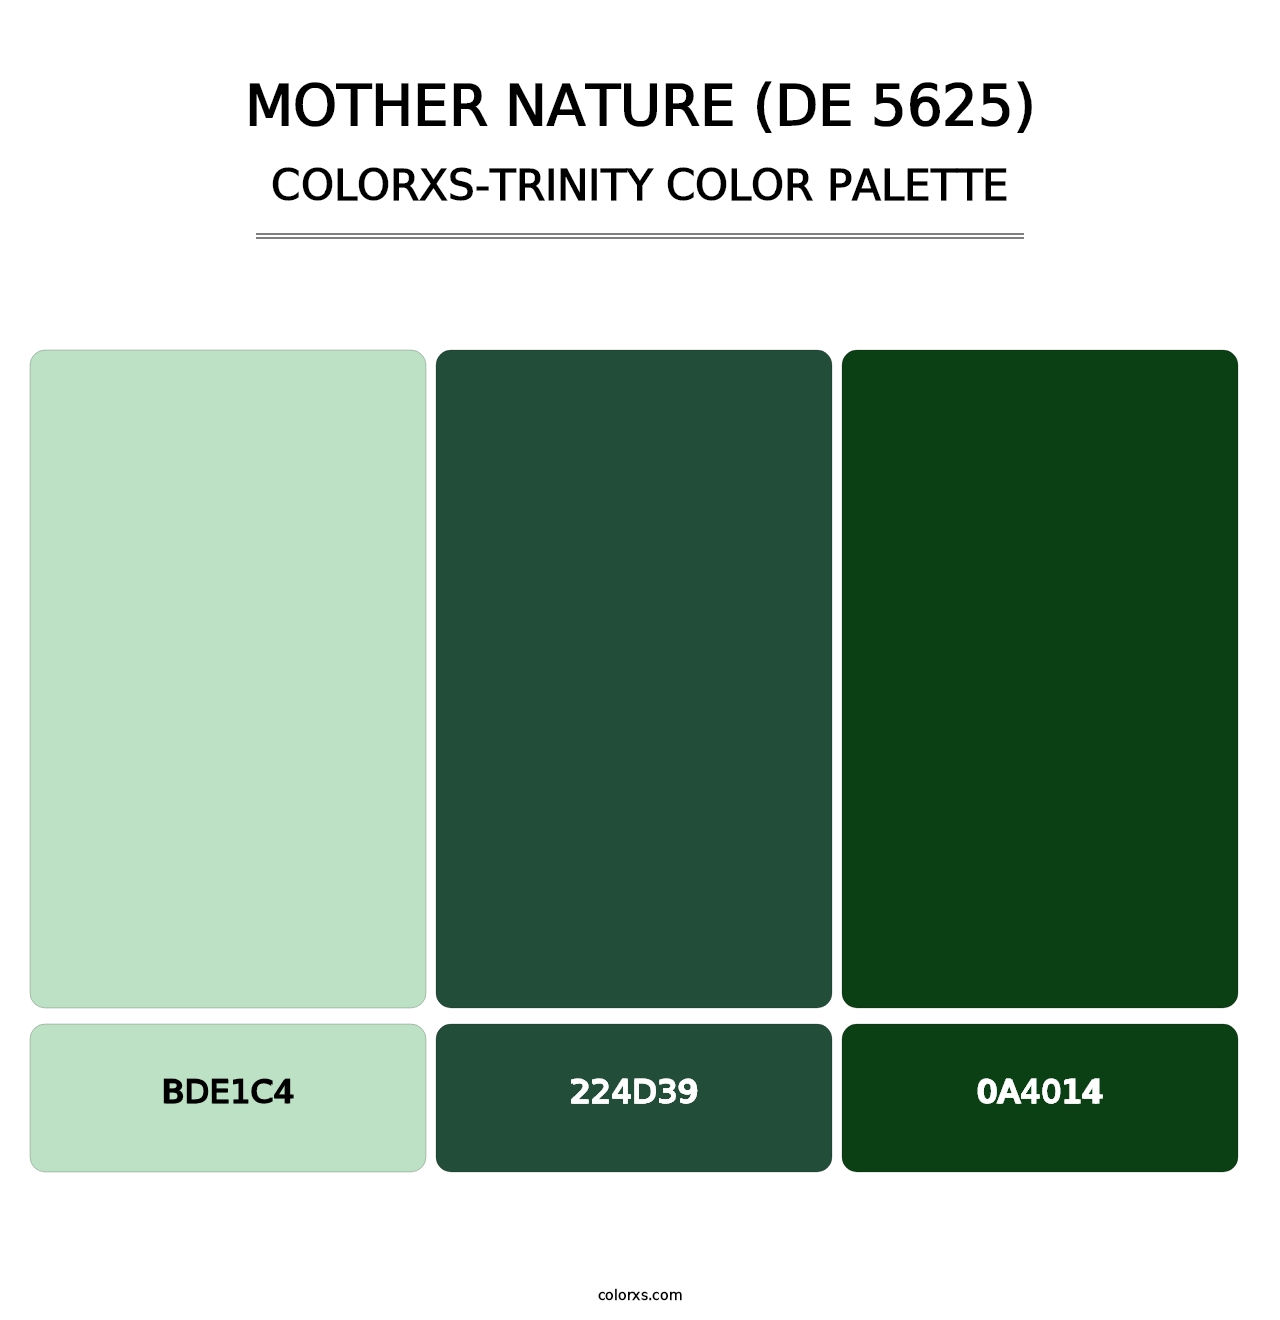 Mother Nature (DE 5625) - Colorxs Trinity Palette